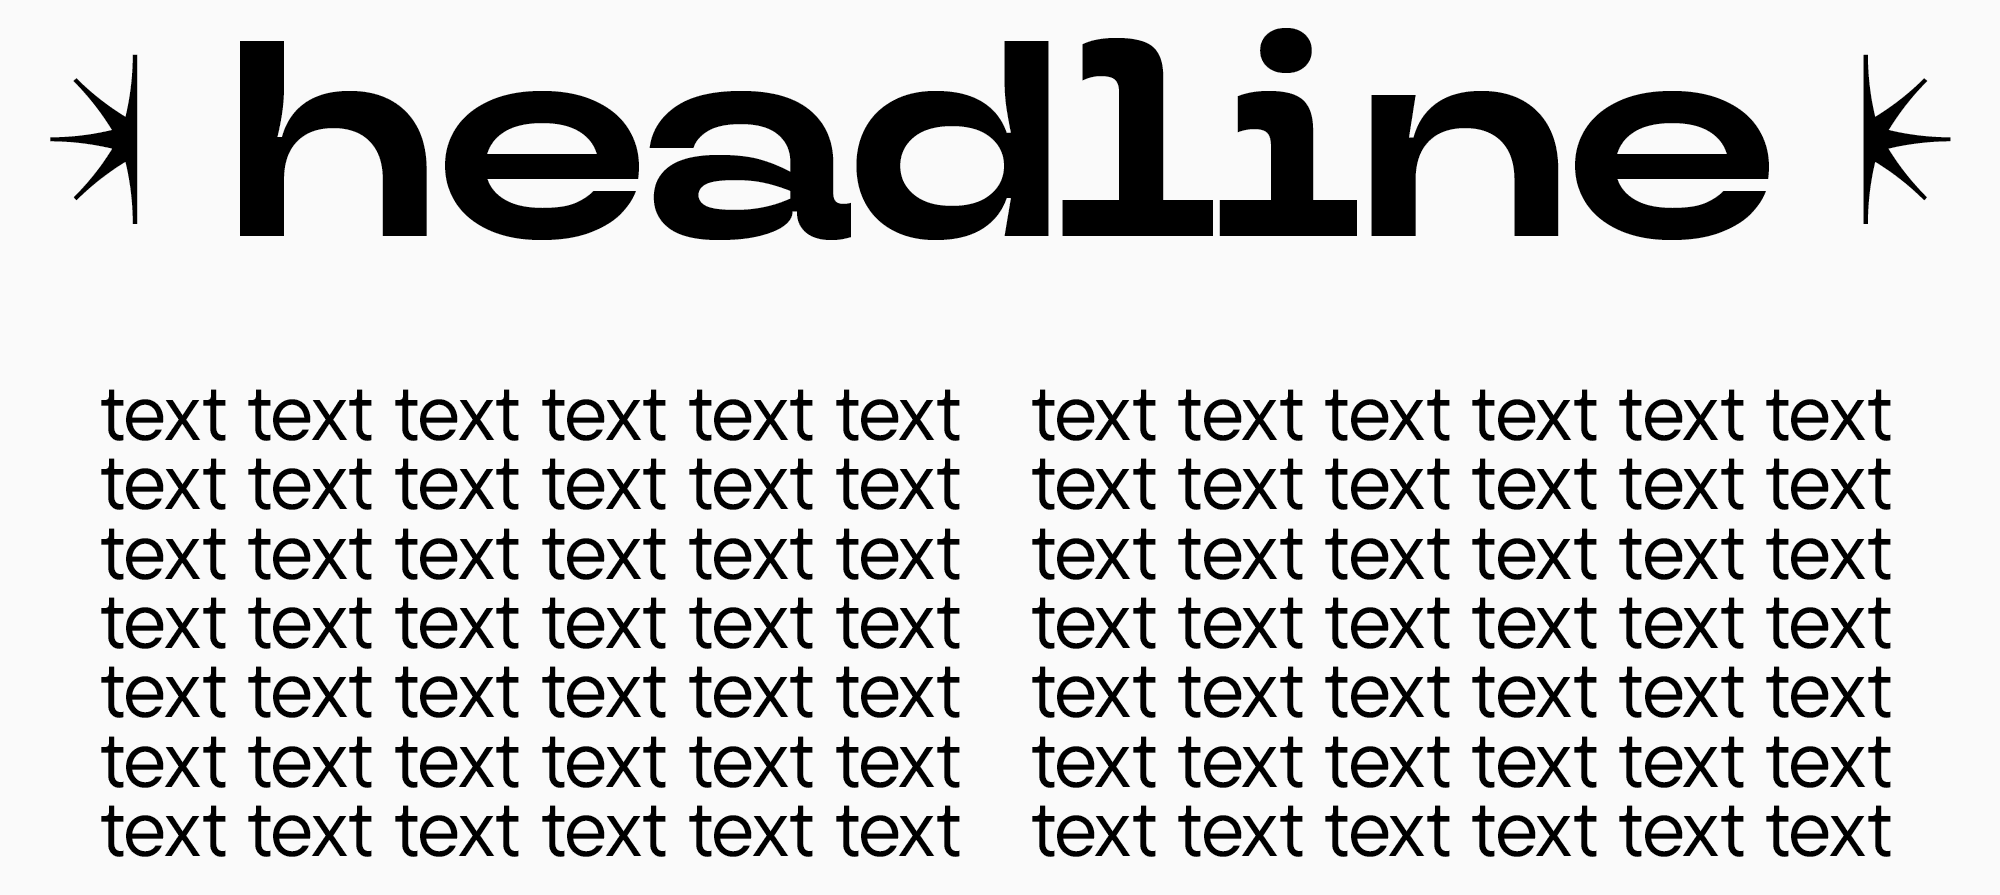 heading fonts